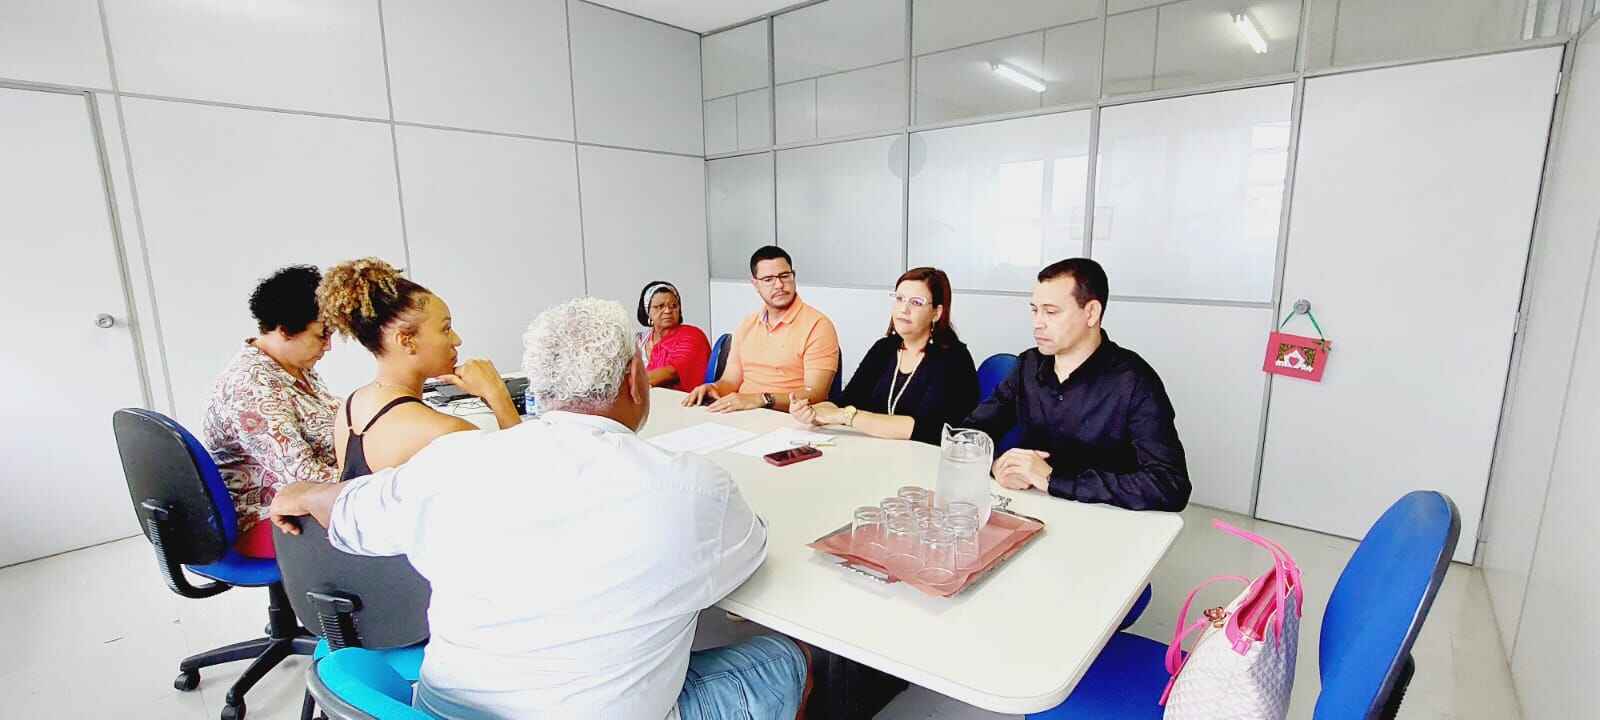 Prefeito de Caraguatatuba assina convênio de R$ 250 mil com Itaú Social para projeto em escolas municipais